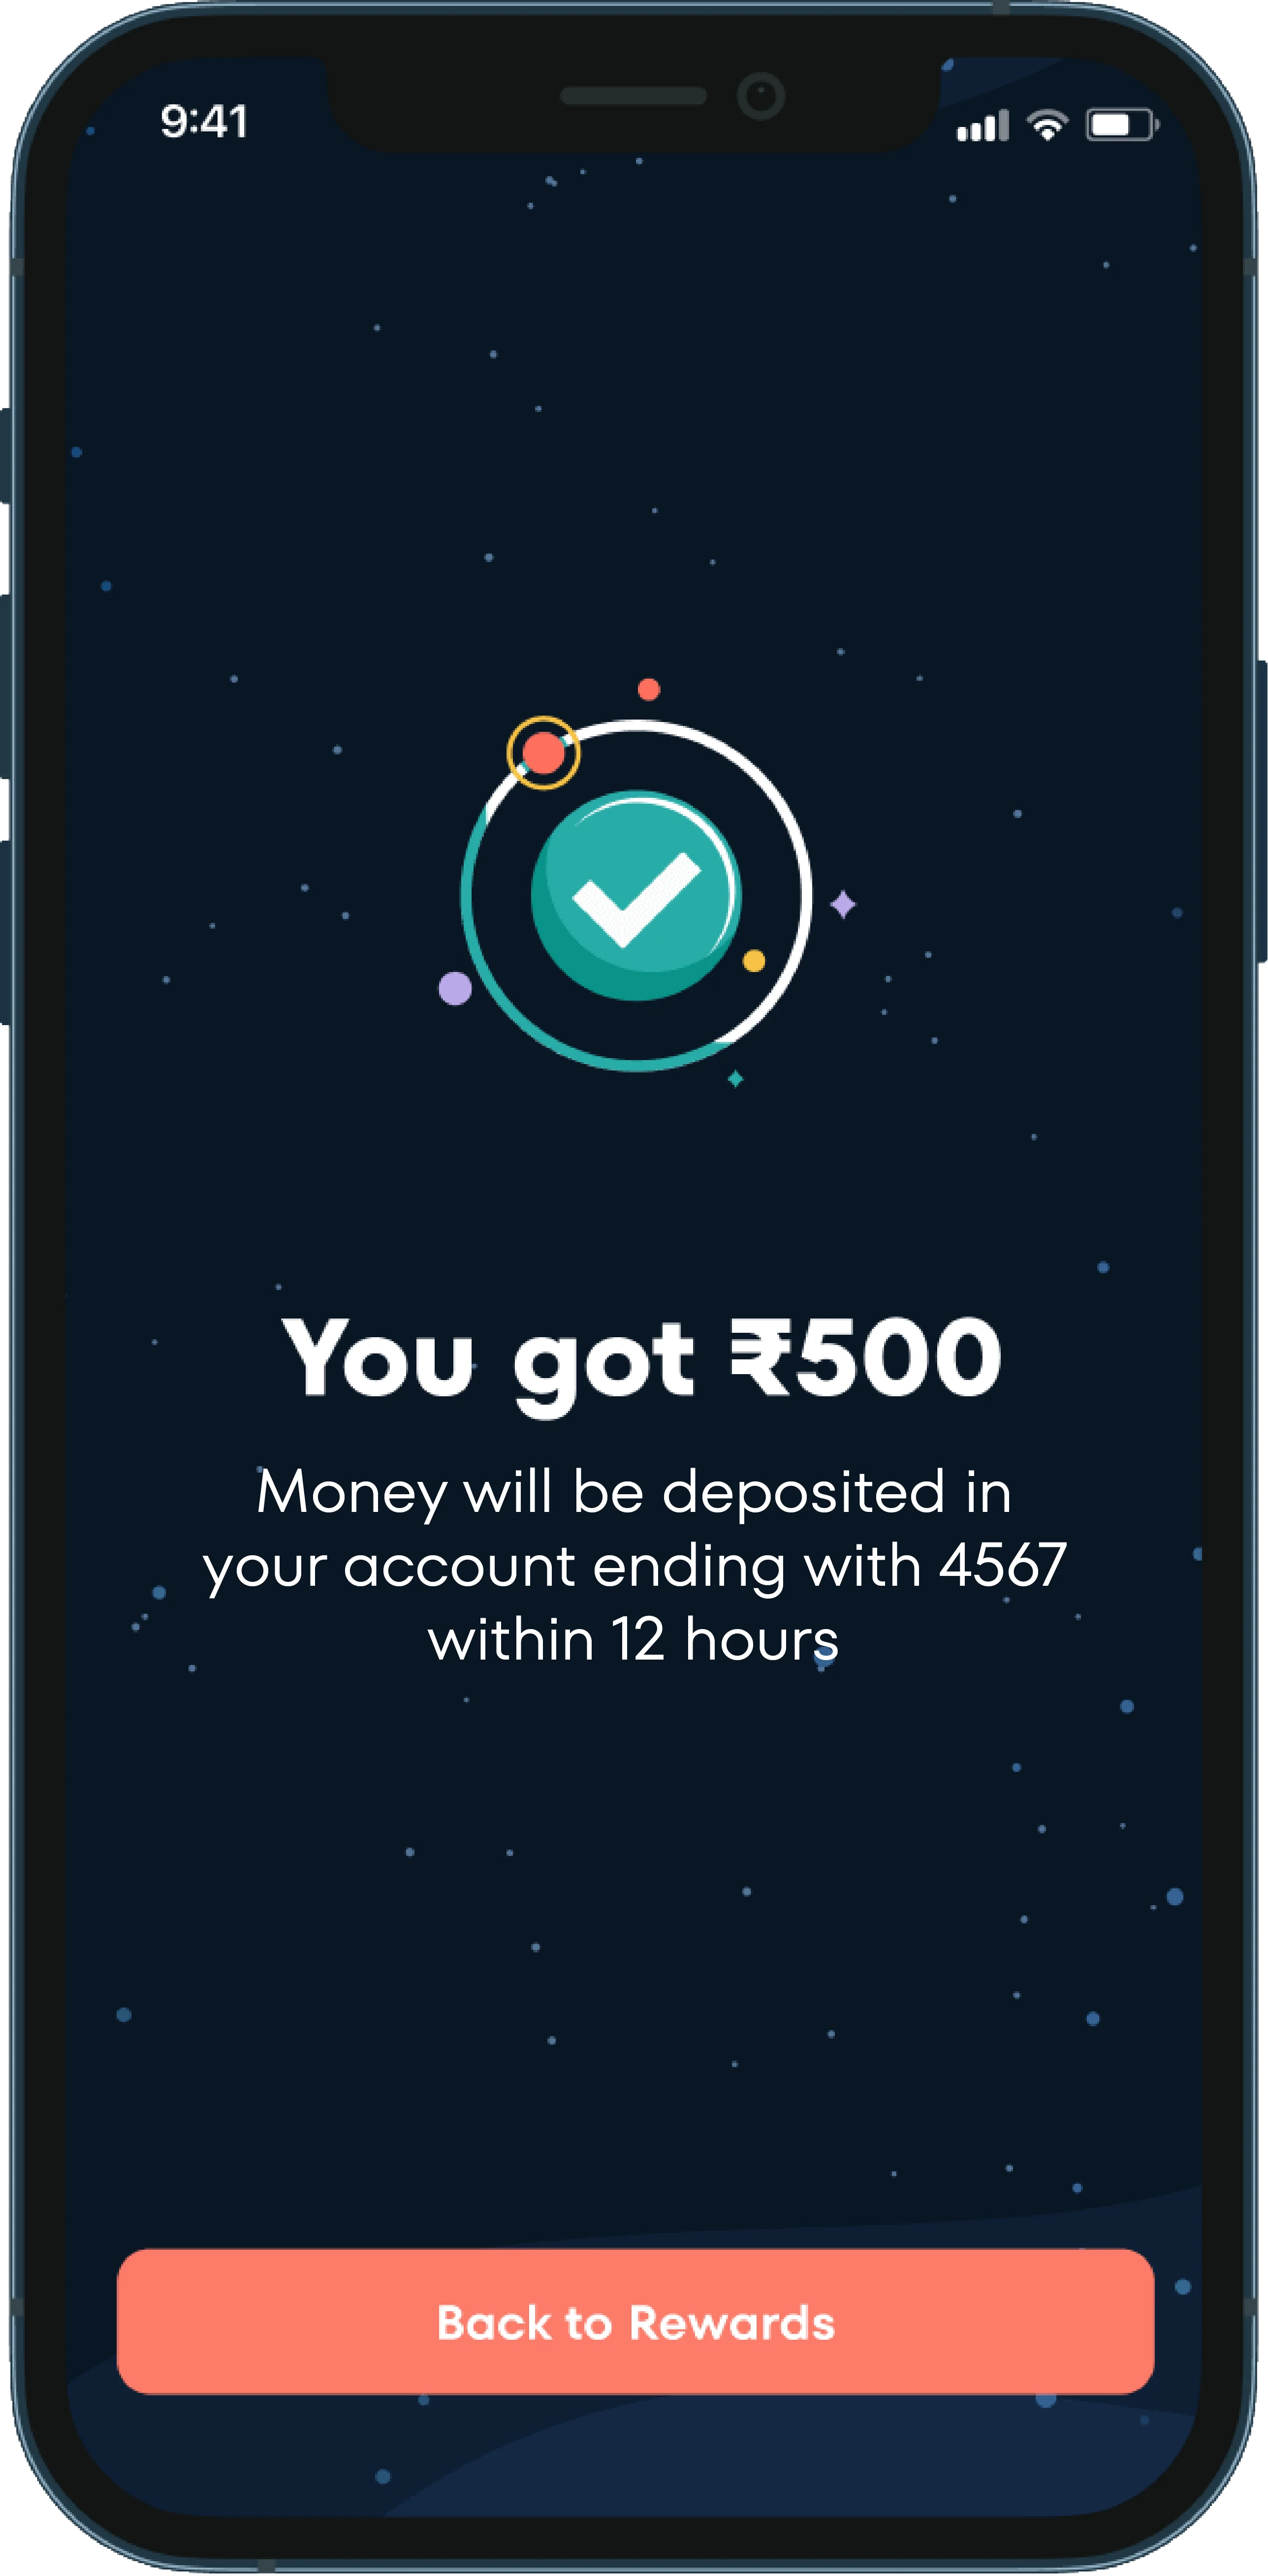 Rewards Feature in Jupiter Money